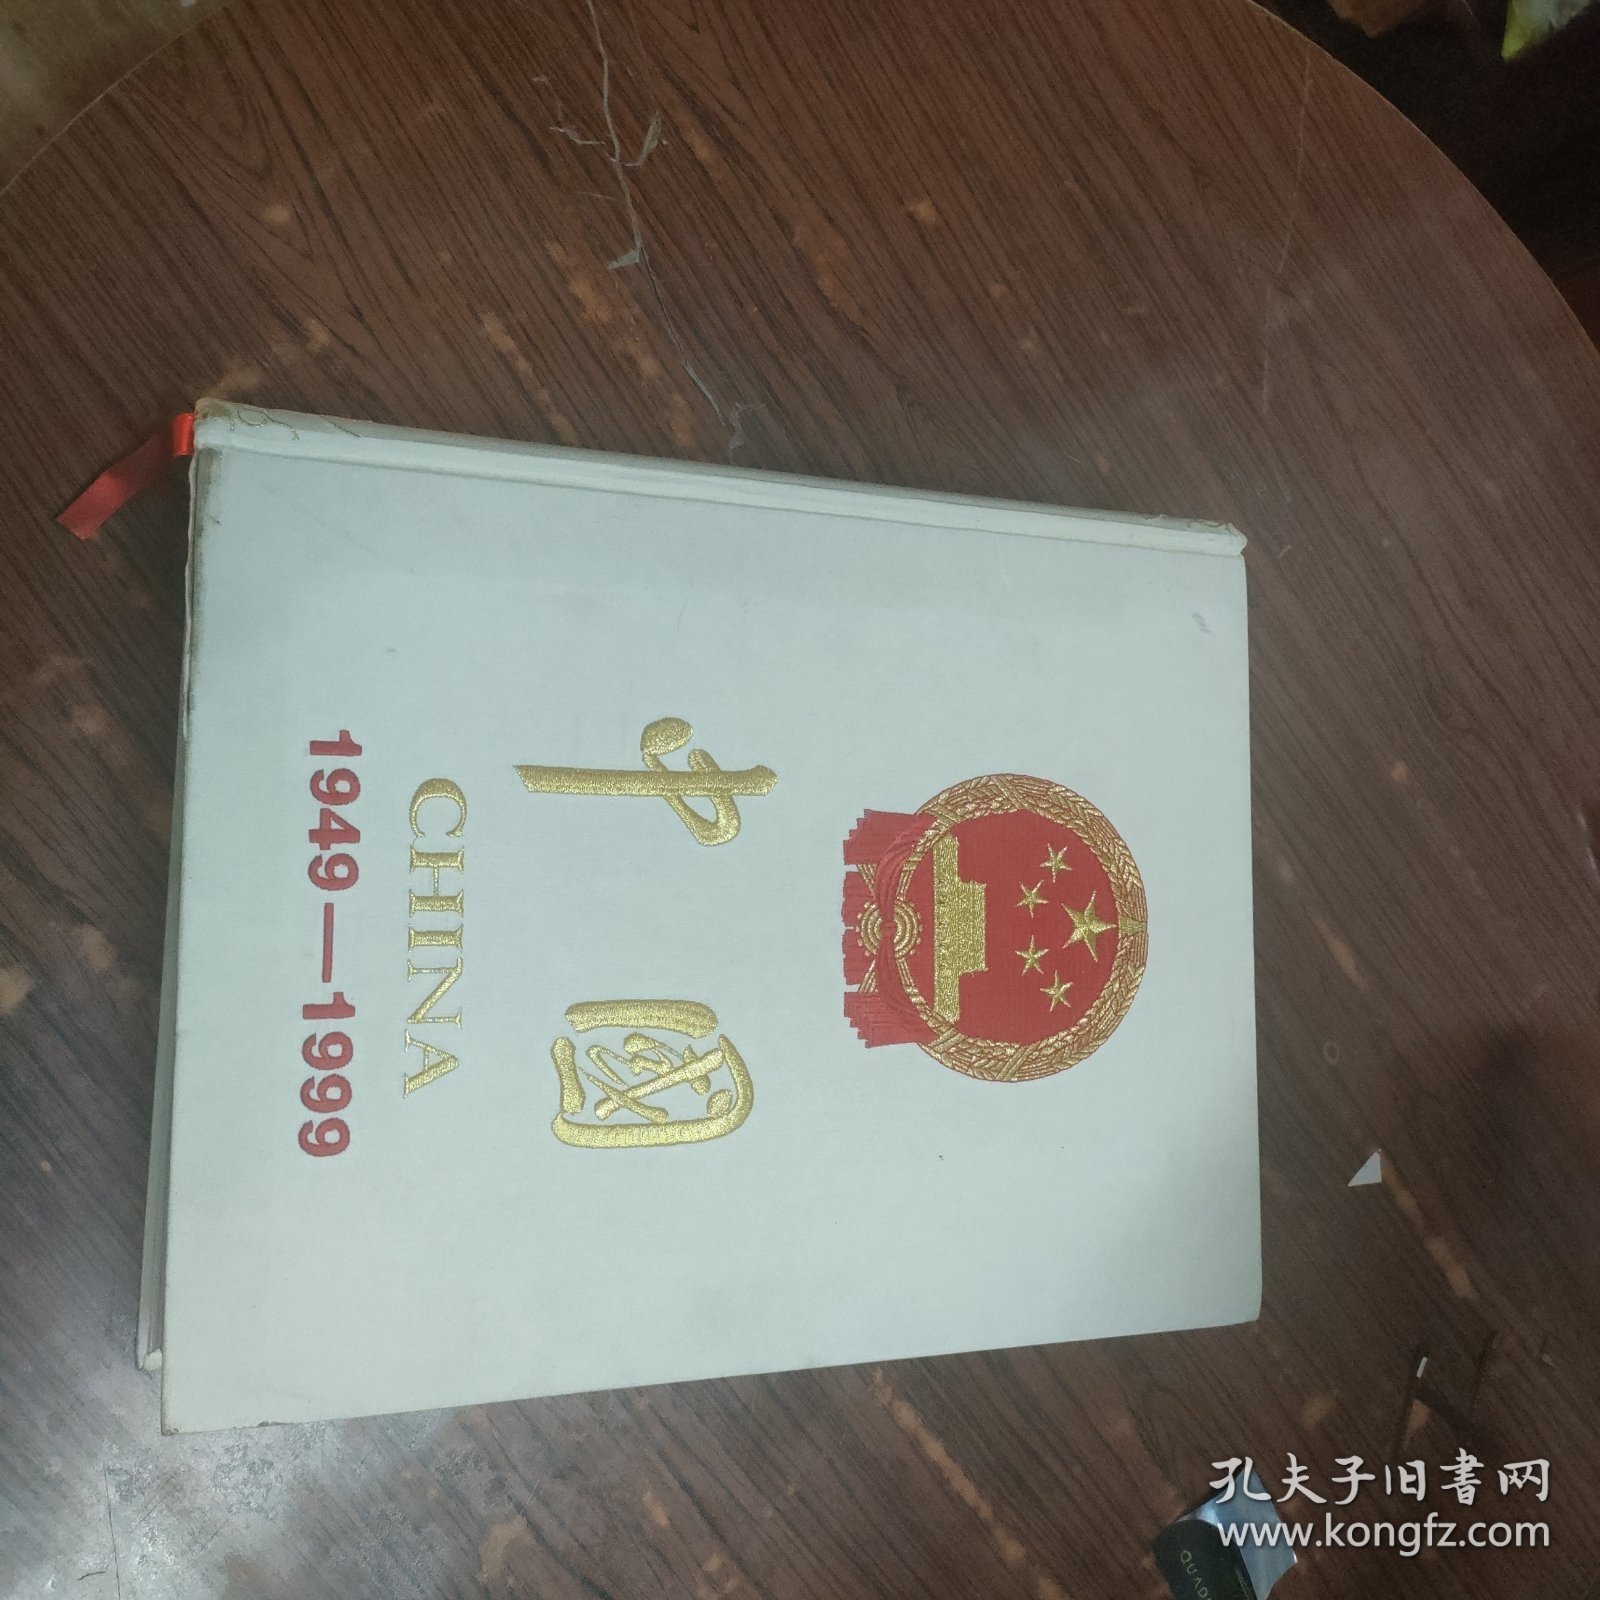 中国 1949-1999 （大型文献画册）8开精装巨厚